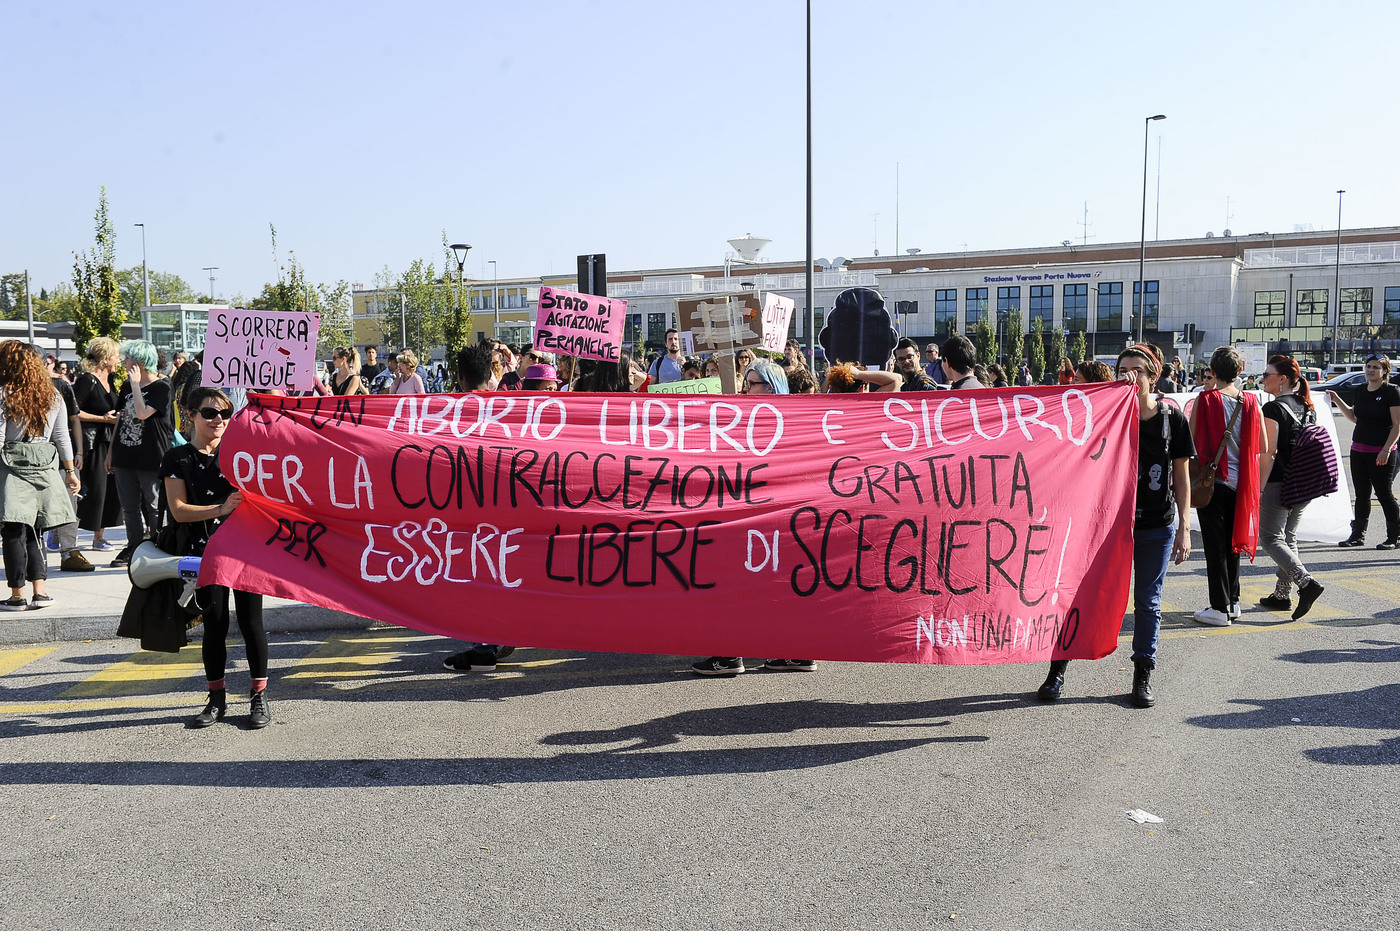 Aborto, il Consiglio d’Europa bacchetta l’Italia: “Disparità di accesso e discriminazioni”